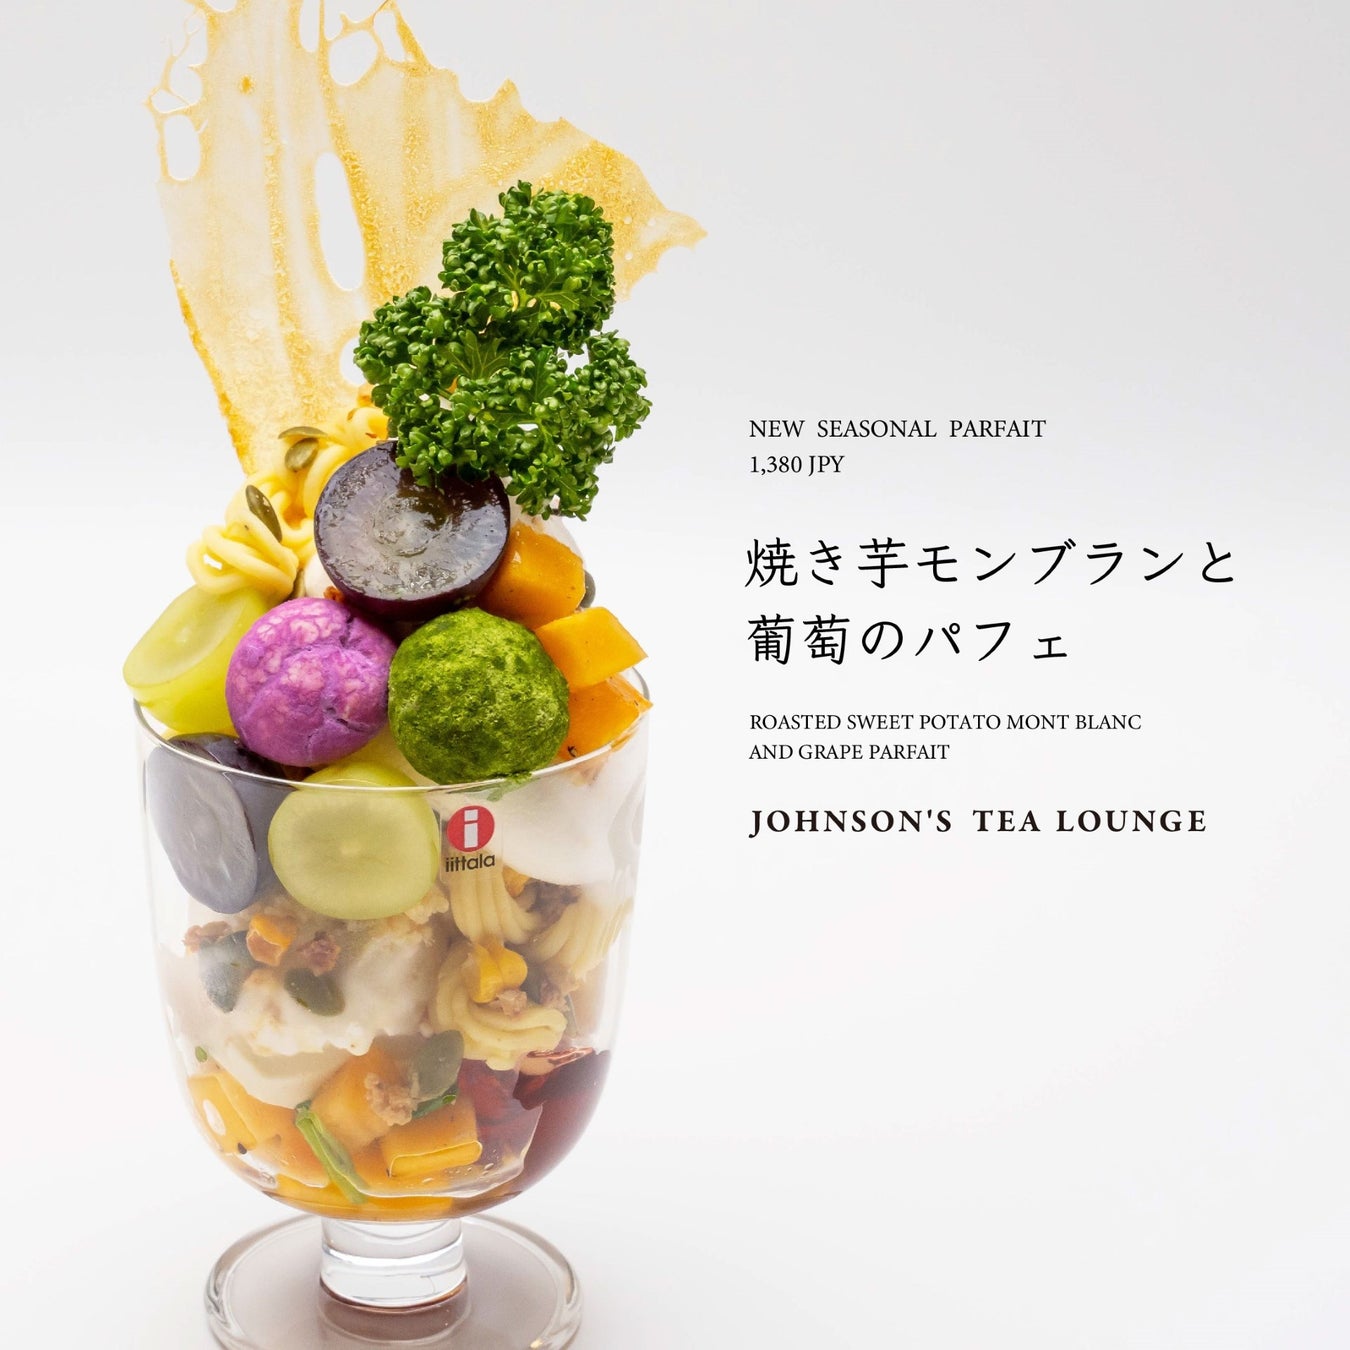 札幌の日本茶カフェ『JOHNSON’S TEA LOUNGE』秋季限定パフェが新登場